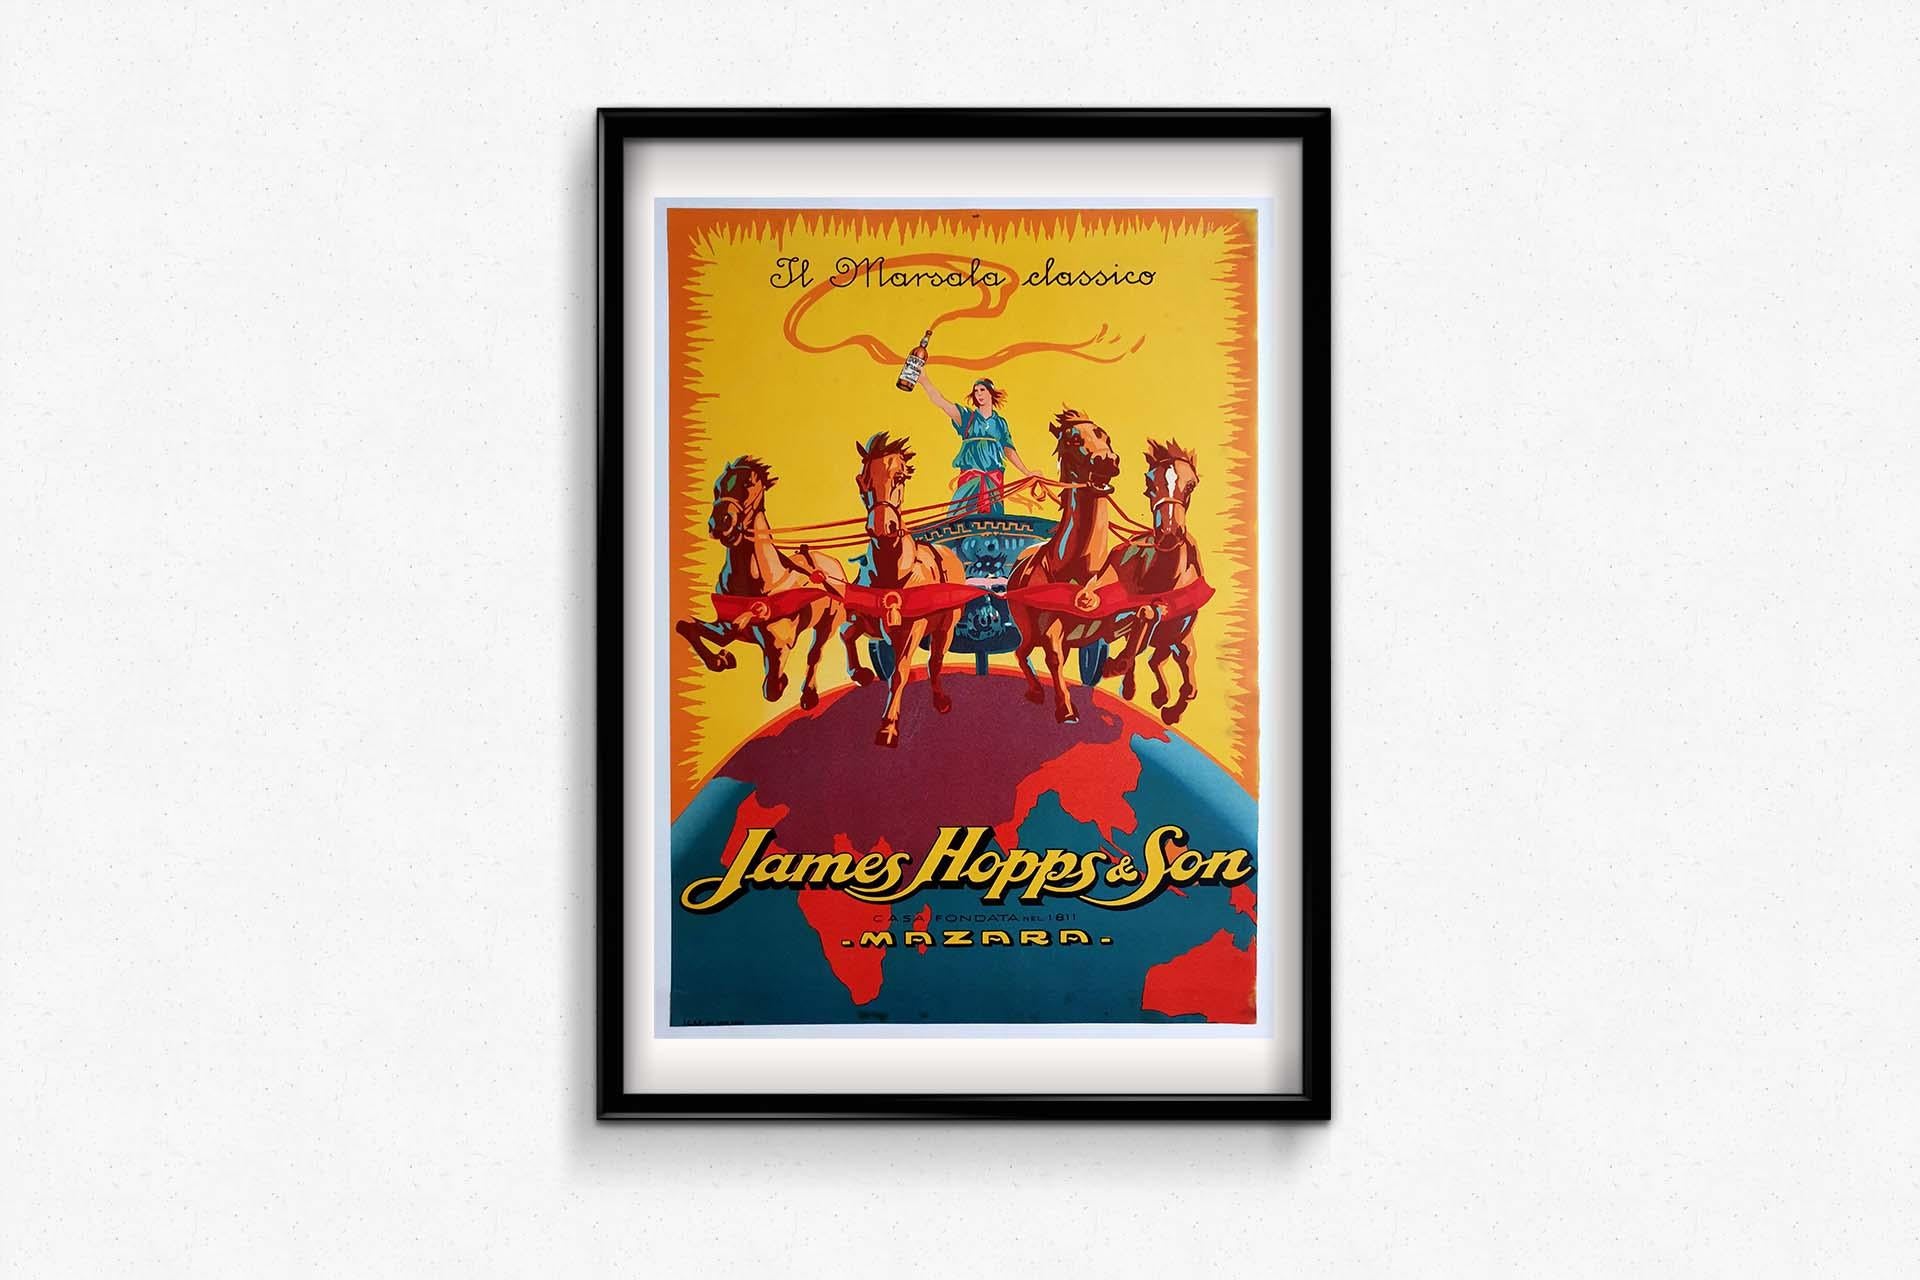 Original-Werbeplakat für James Hopps & Sons' „Il Marsala Classico“  (Art déco), Print, von Unknown